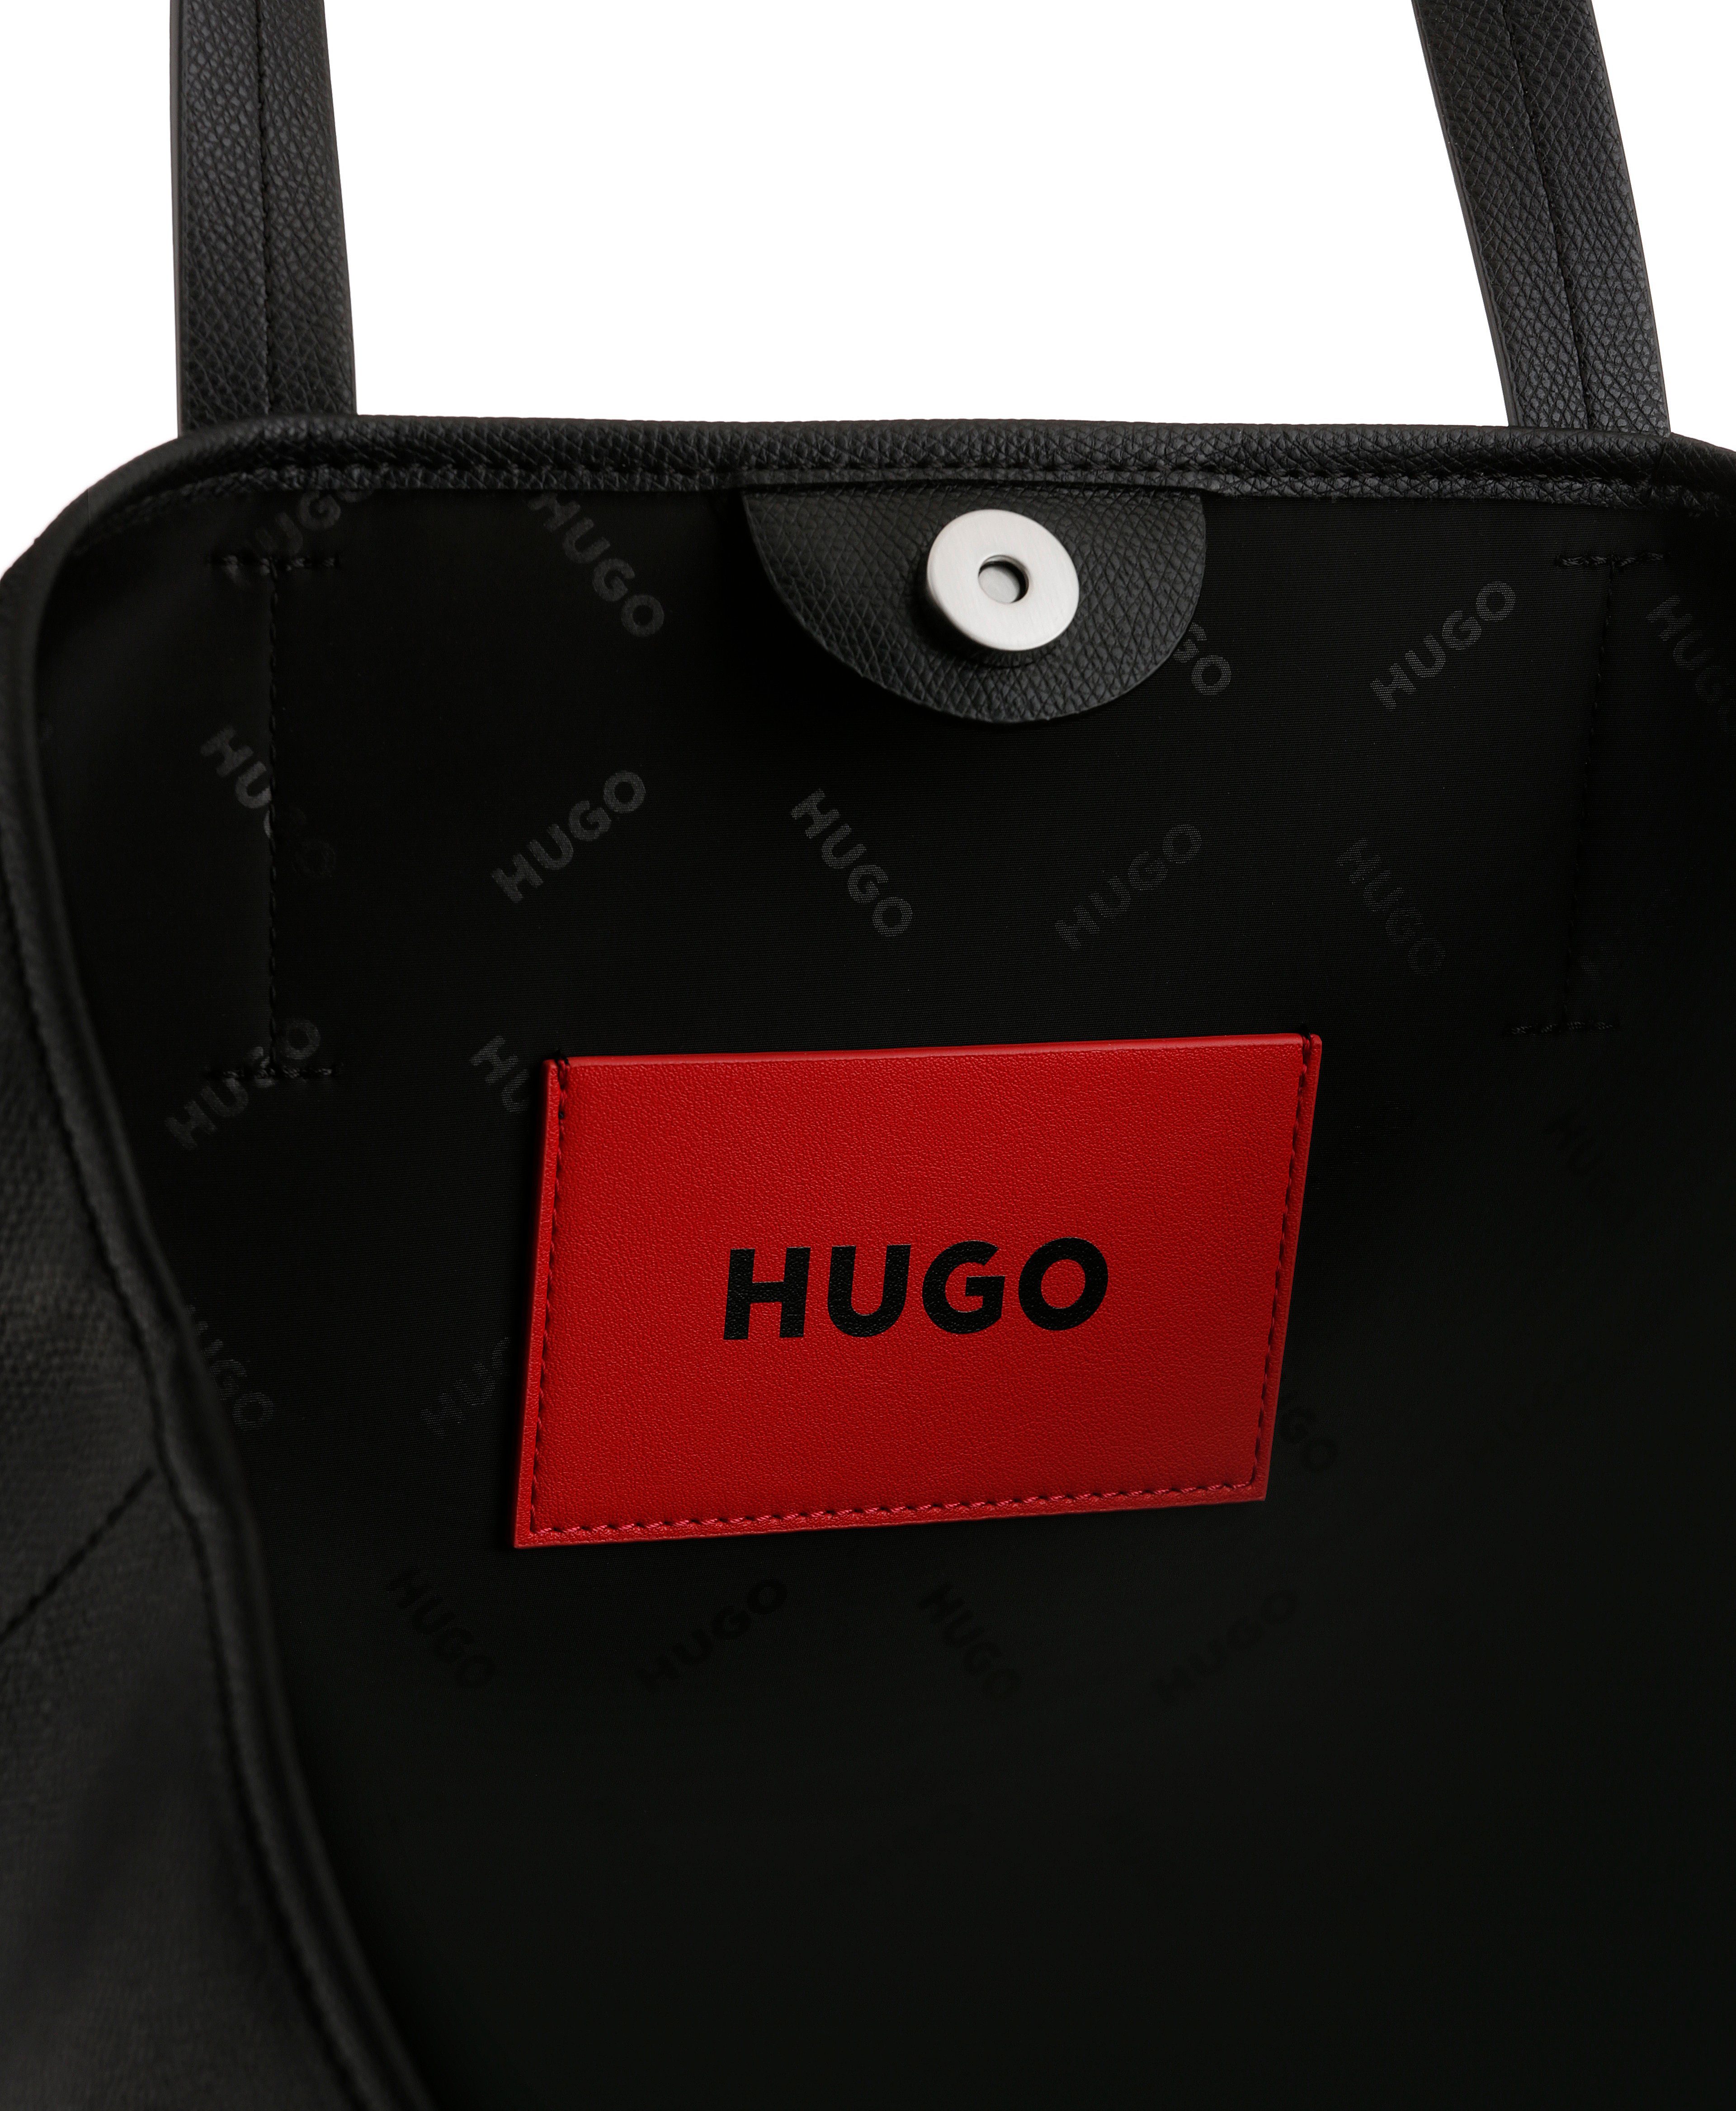 Shopper-SL, herausnehmbarer Shopper Chris Reißverschluss-Innentasche mit HUGO